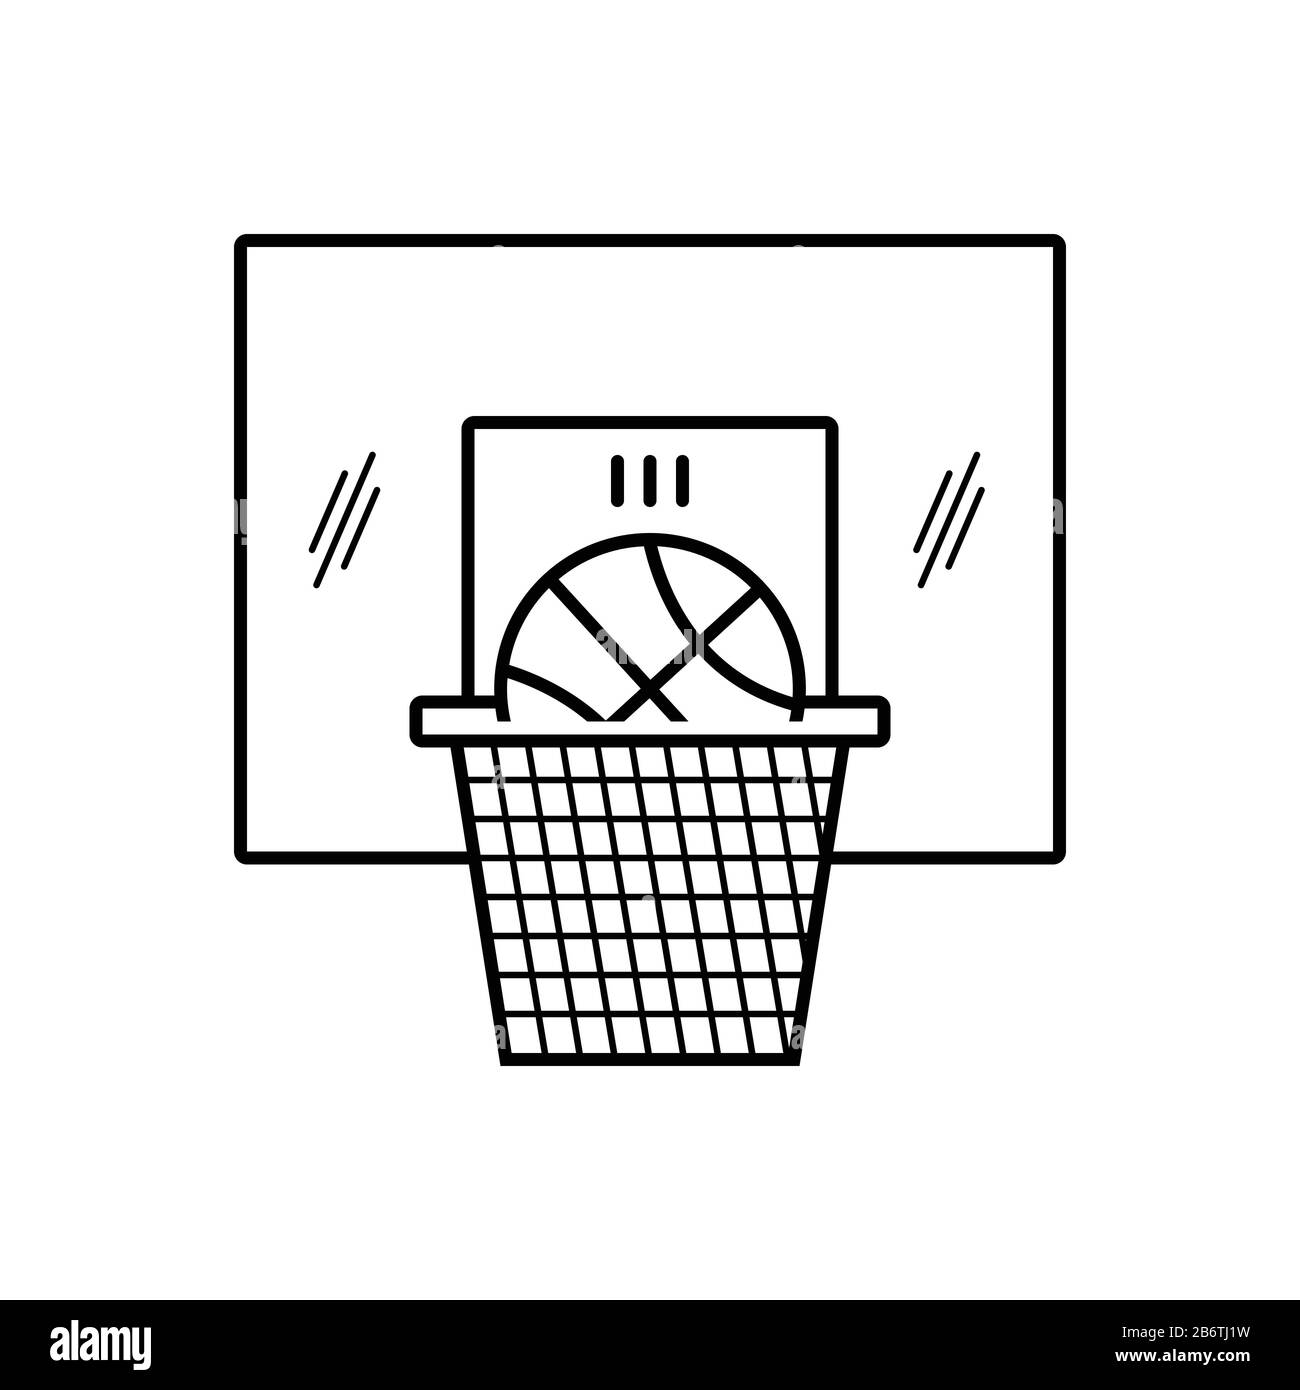 Basketball-Ikone Stock Vektor